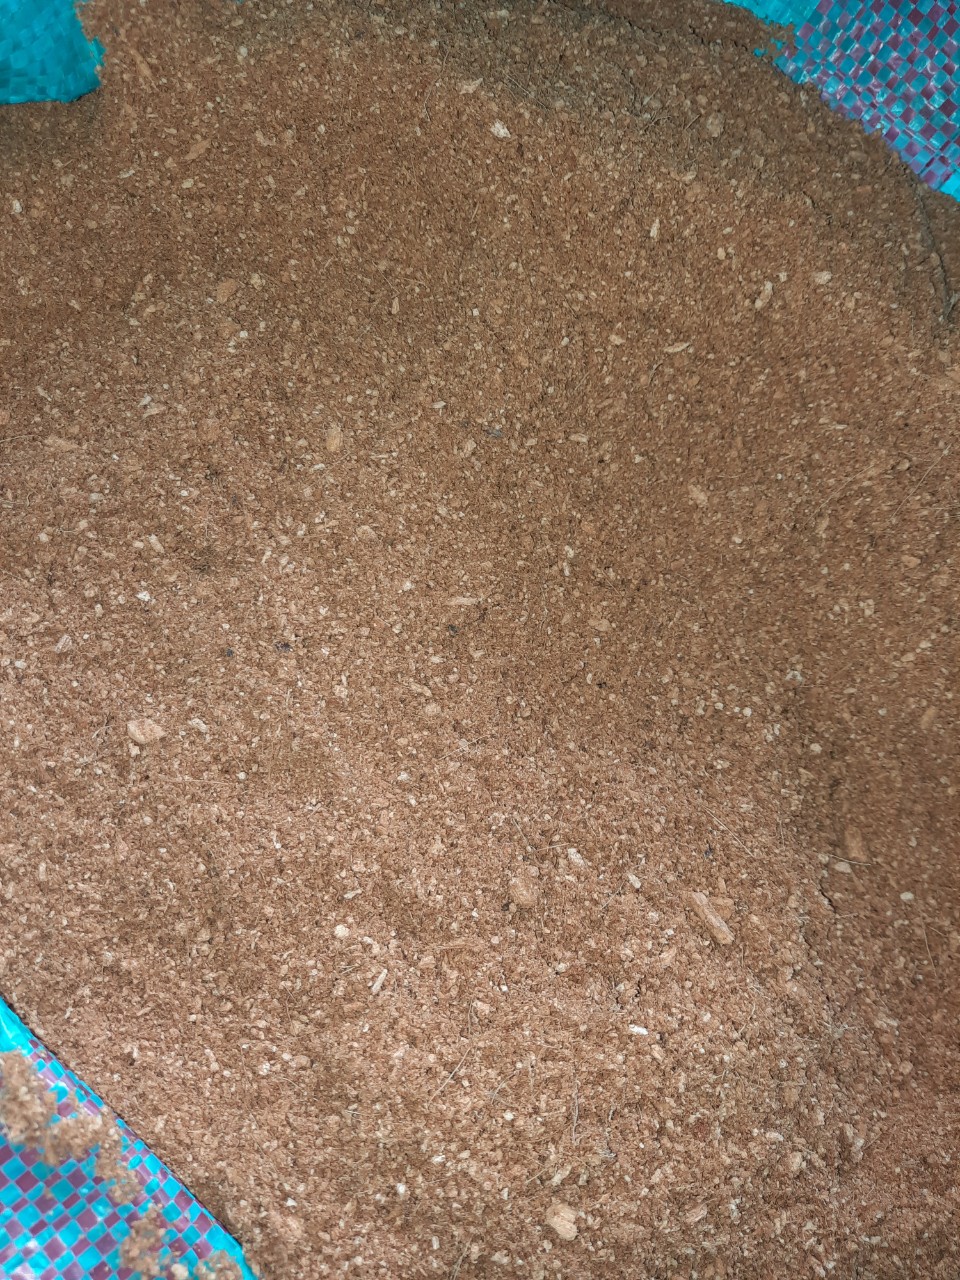 Mùn sàn mịn dùng trong vườn ươm, gieo mạ - Mụn Dừa, Sơ Dừa Trần Vinh - Cơ Sở Dừa Trần Vinh